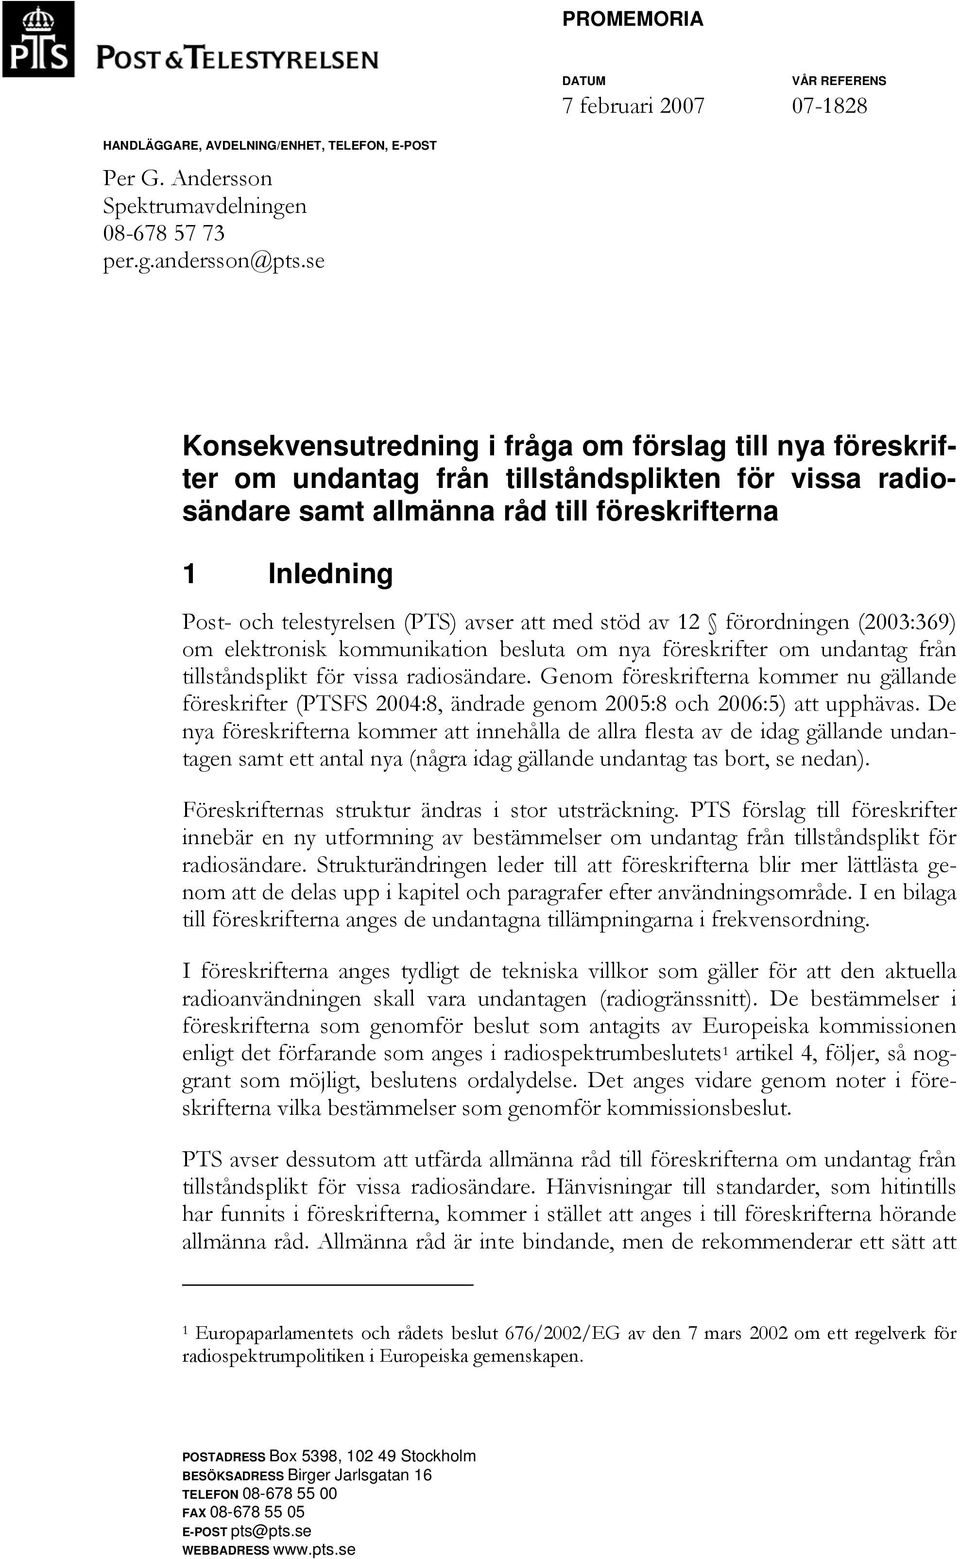 (PTS) avser att med stöd av 12 förordningen (2003:369) om elektronisk kommunikation besluta om nya föreskrifter om undantag från tillståndsplikt för vissa radiosändare.